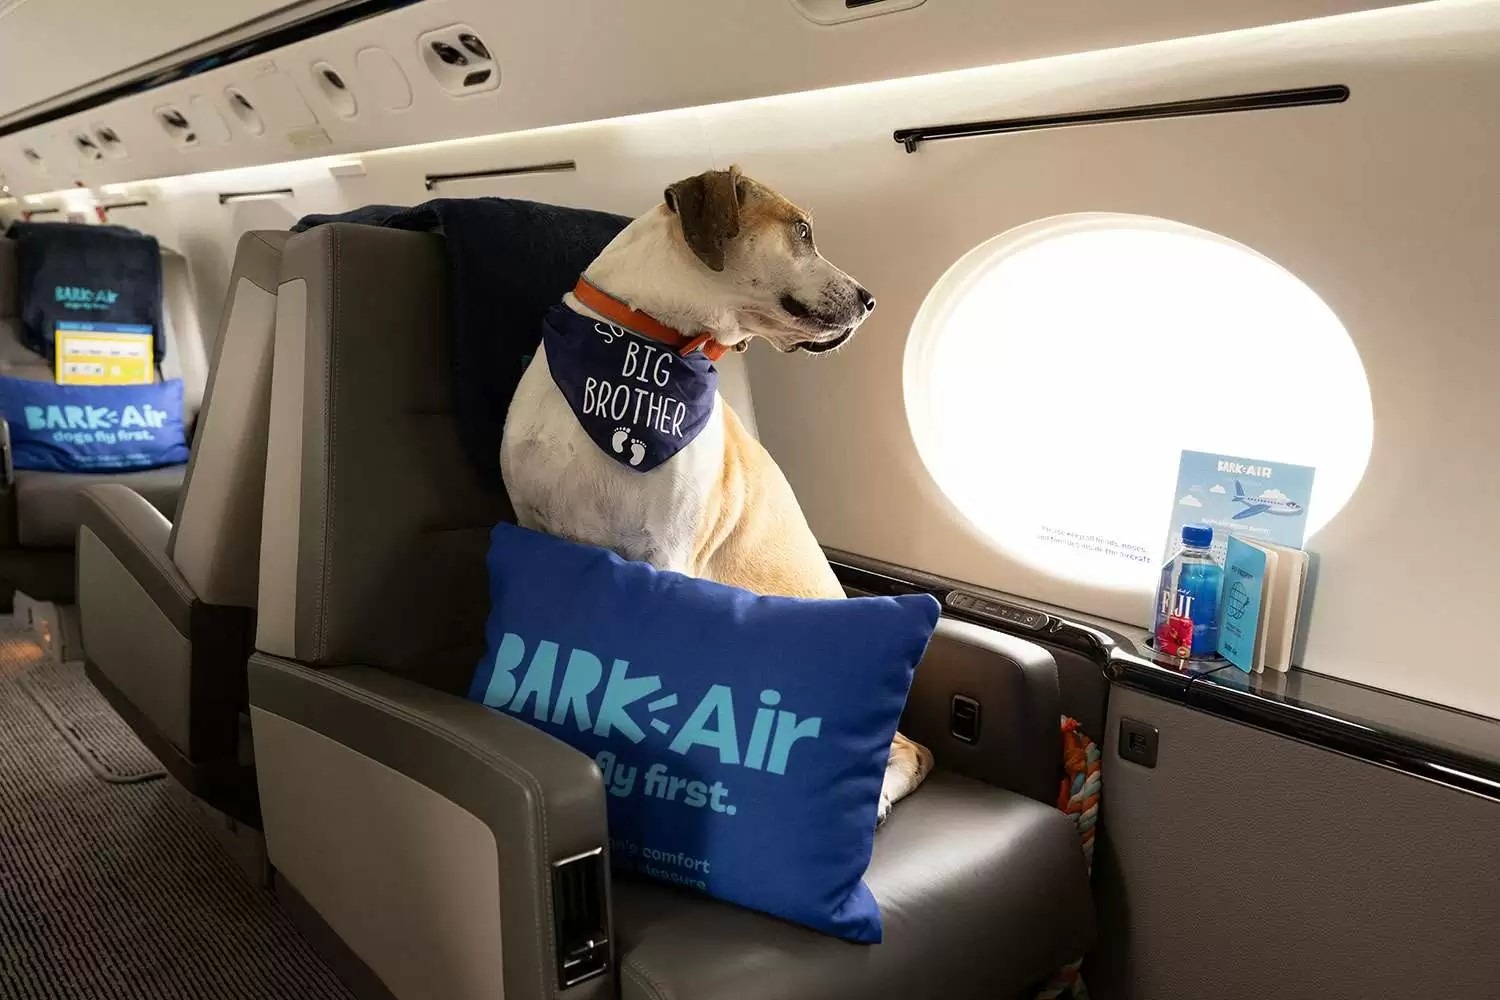 Lanzan aerolínea con vuelos en primera clase para perros ¿En Colombia debería existir?